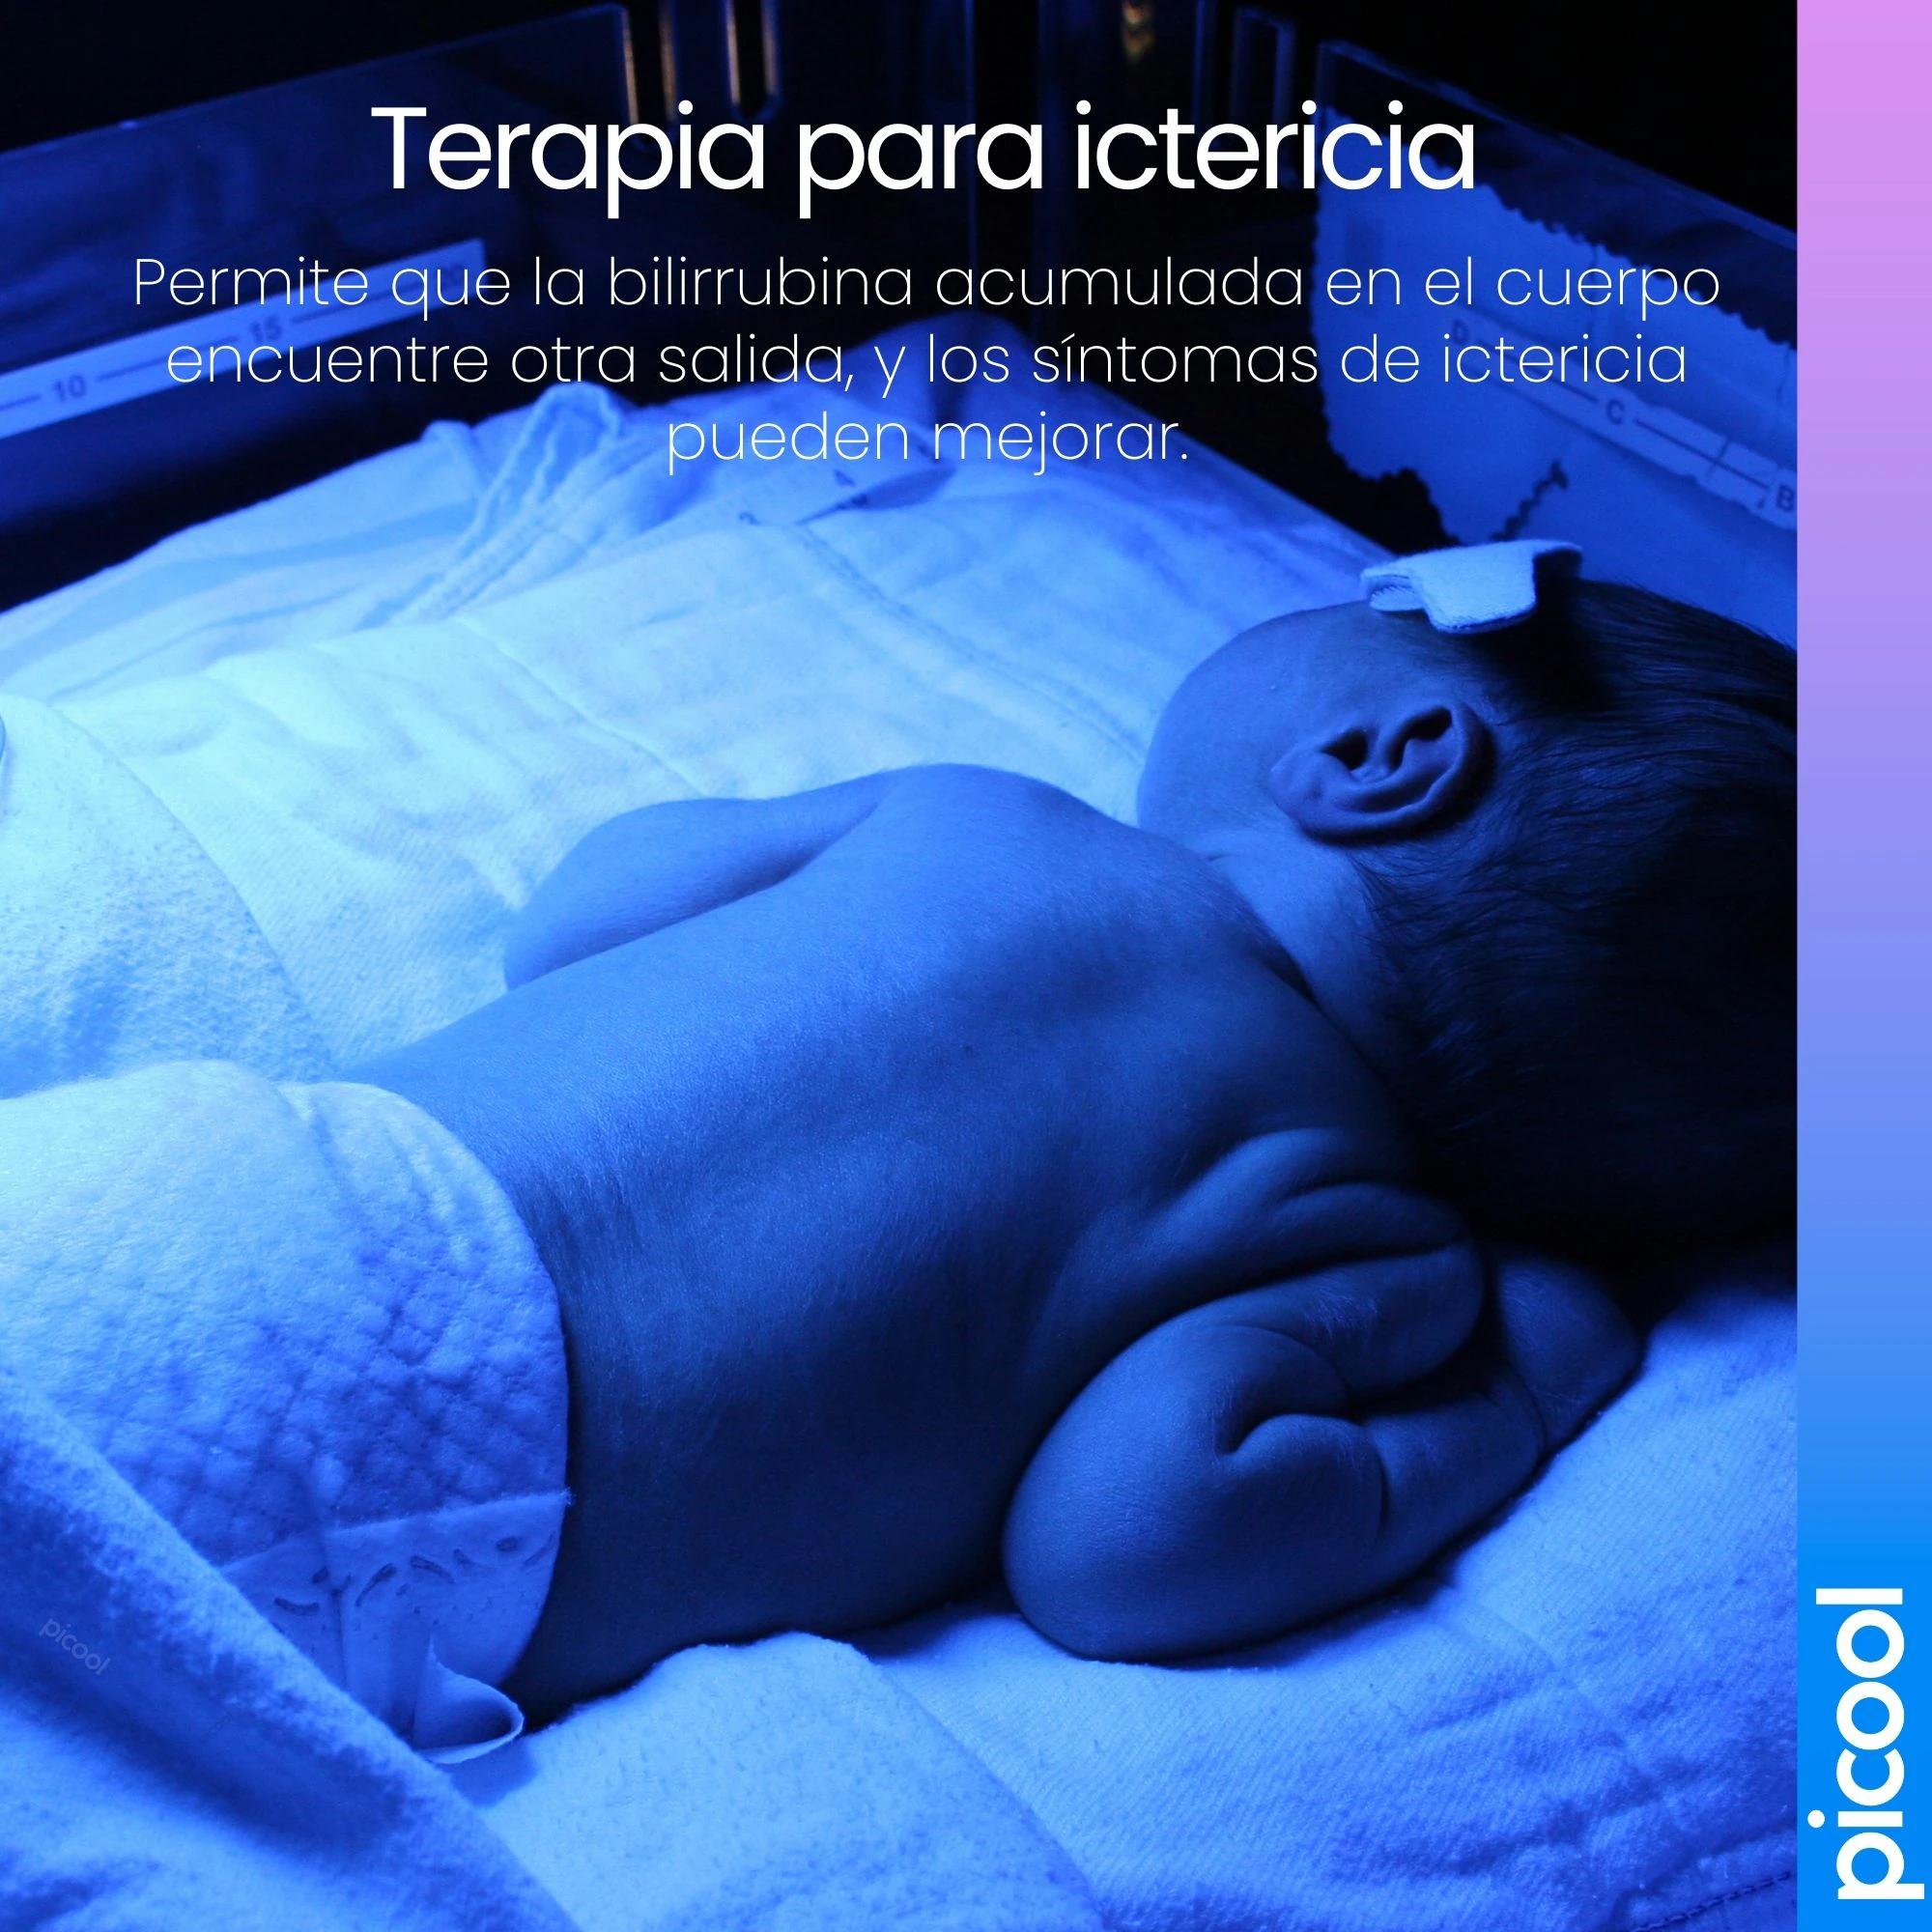 lamparas para bebes con ictericia - Cómo bajar la bilirrubina en un bebé en casa